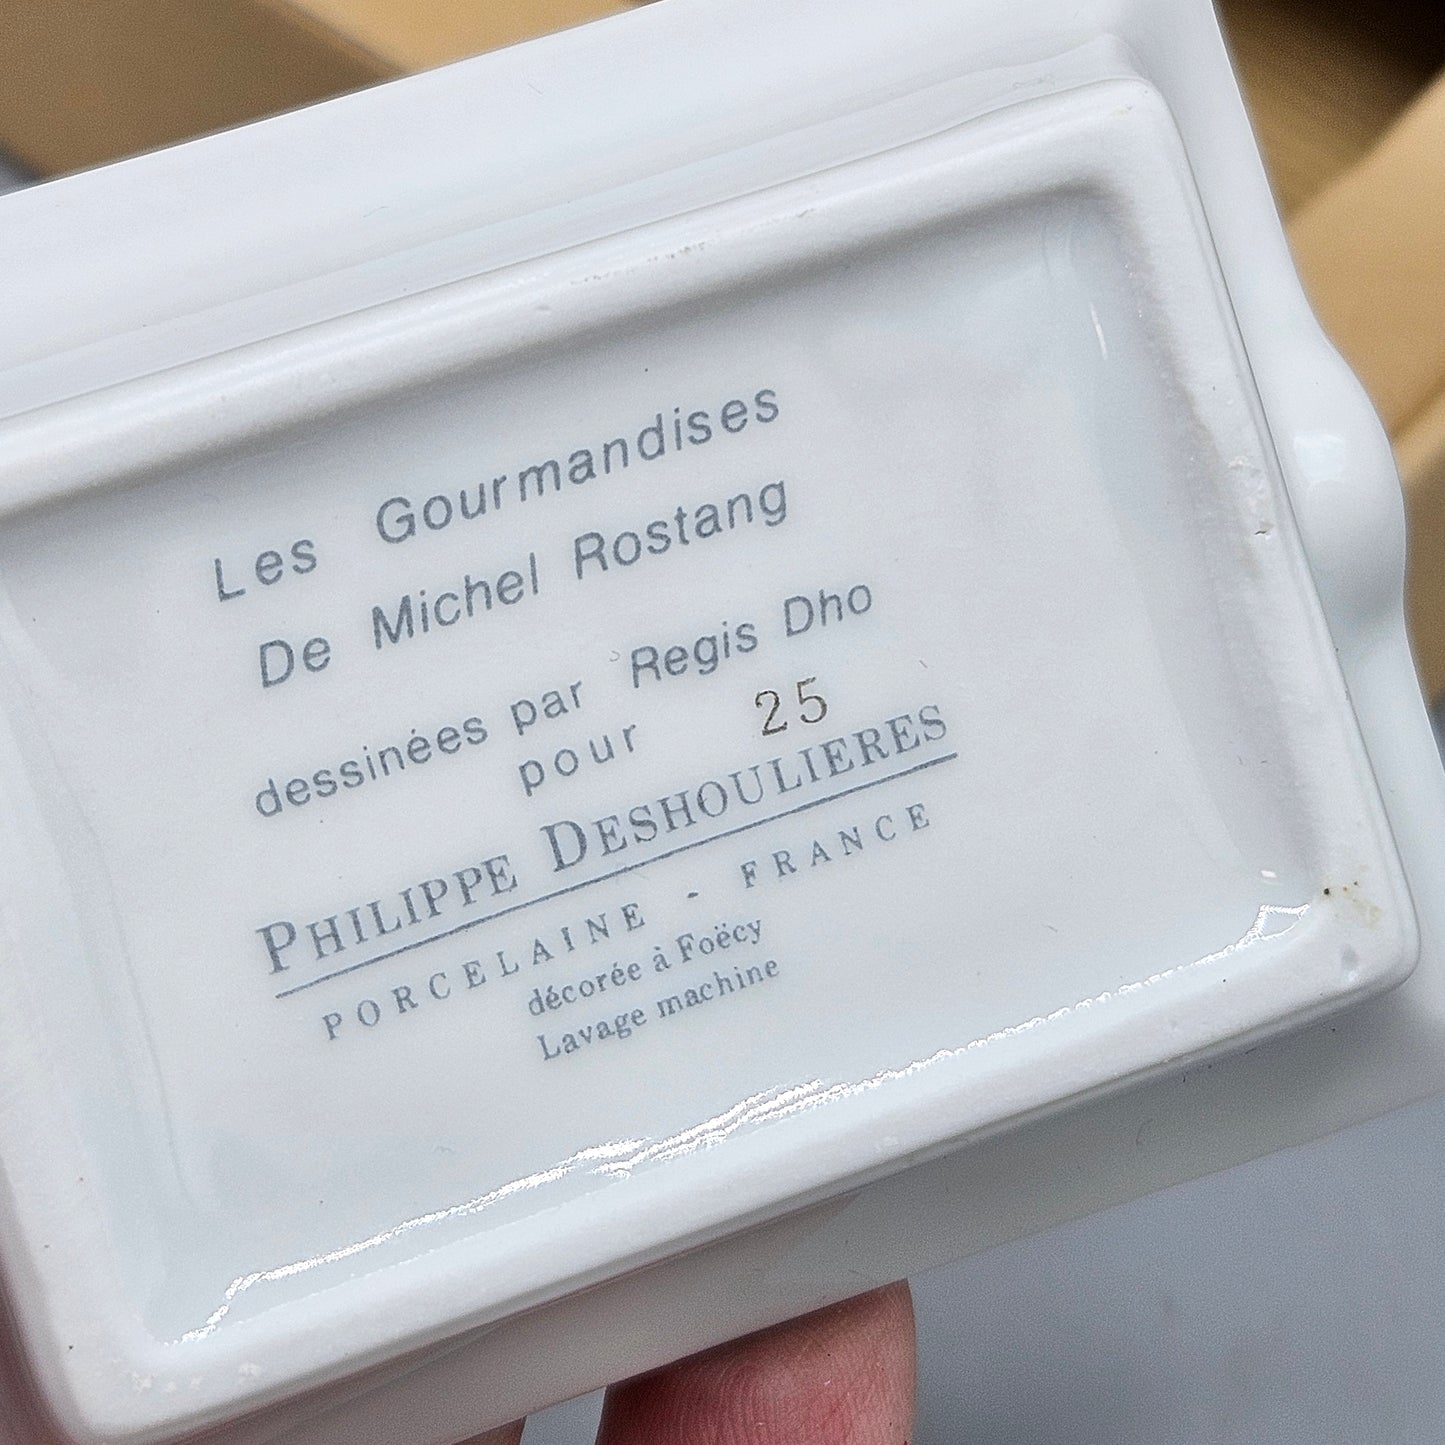 Set of 4 Les Gourmandises De Michel Rostang by Philippe Deshoulieres Porcelain Ashtrays in Box